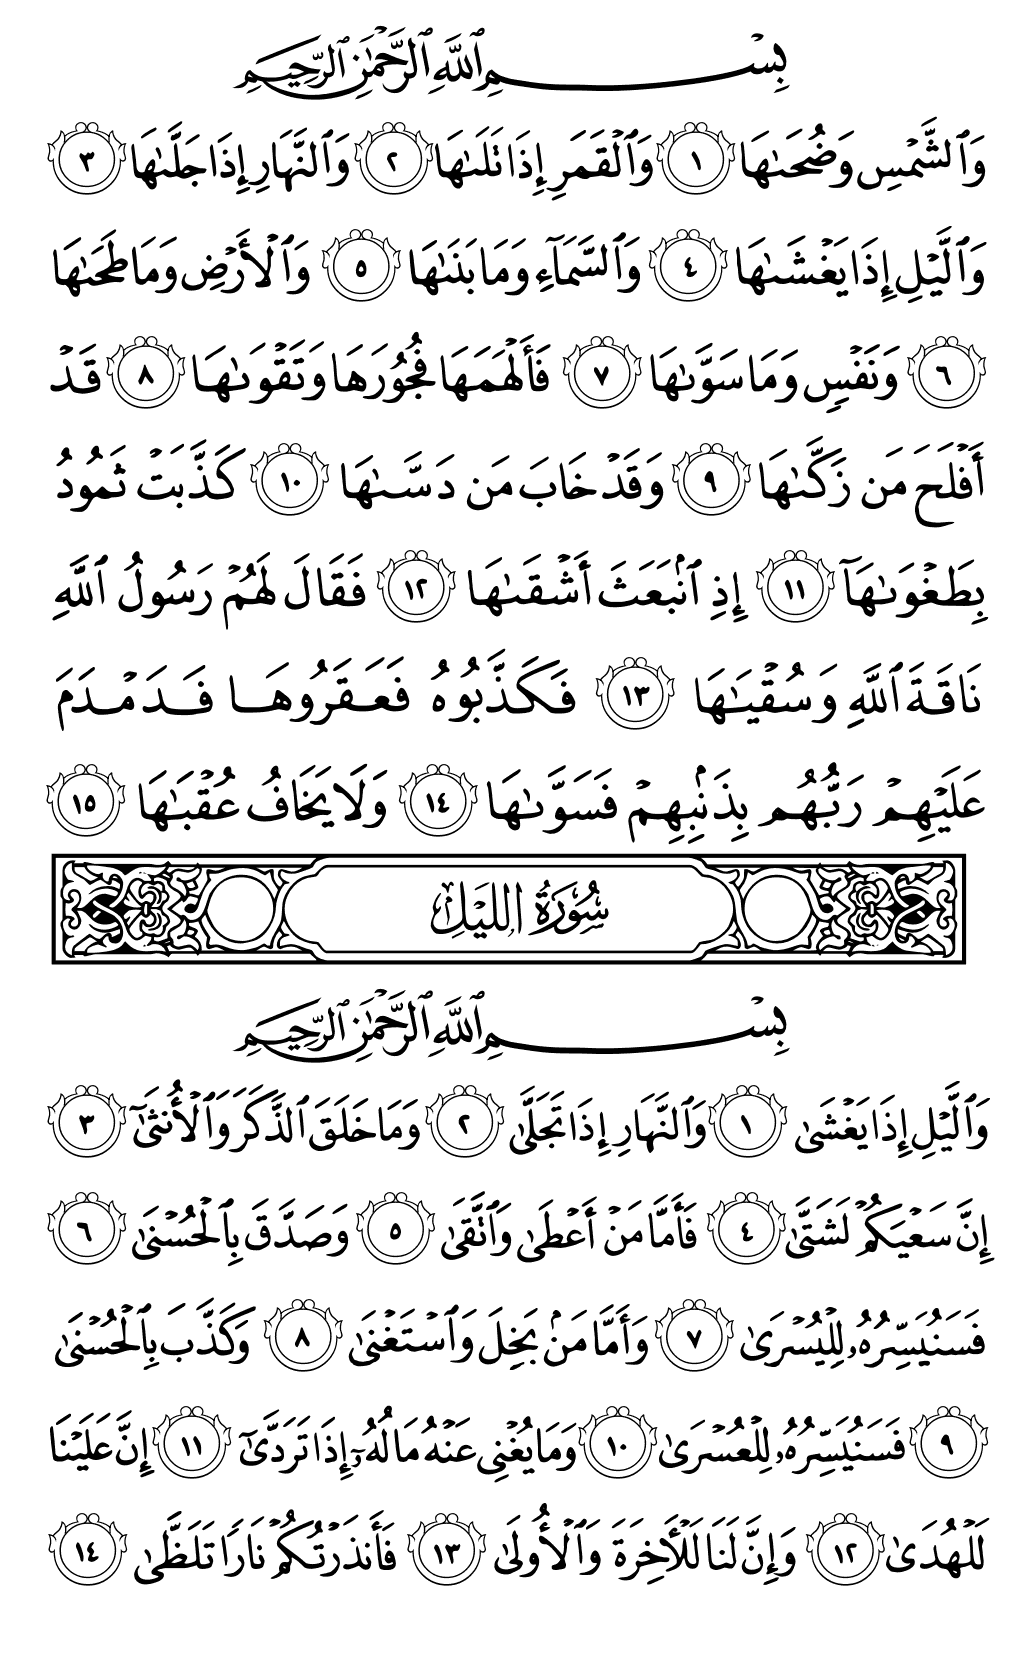 الصفحة رقم 595 من القرآن الكريم